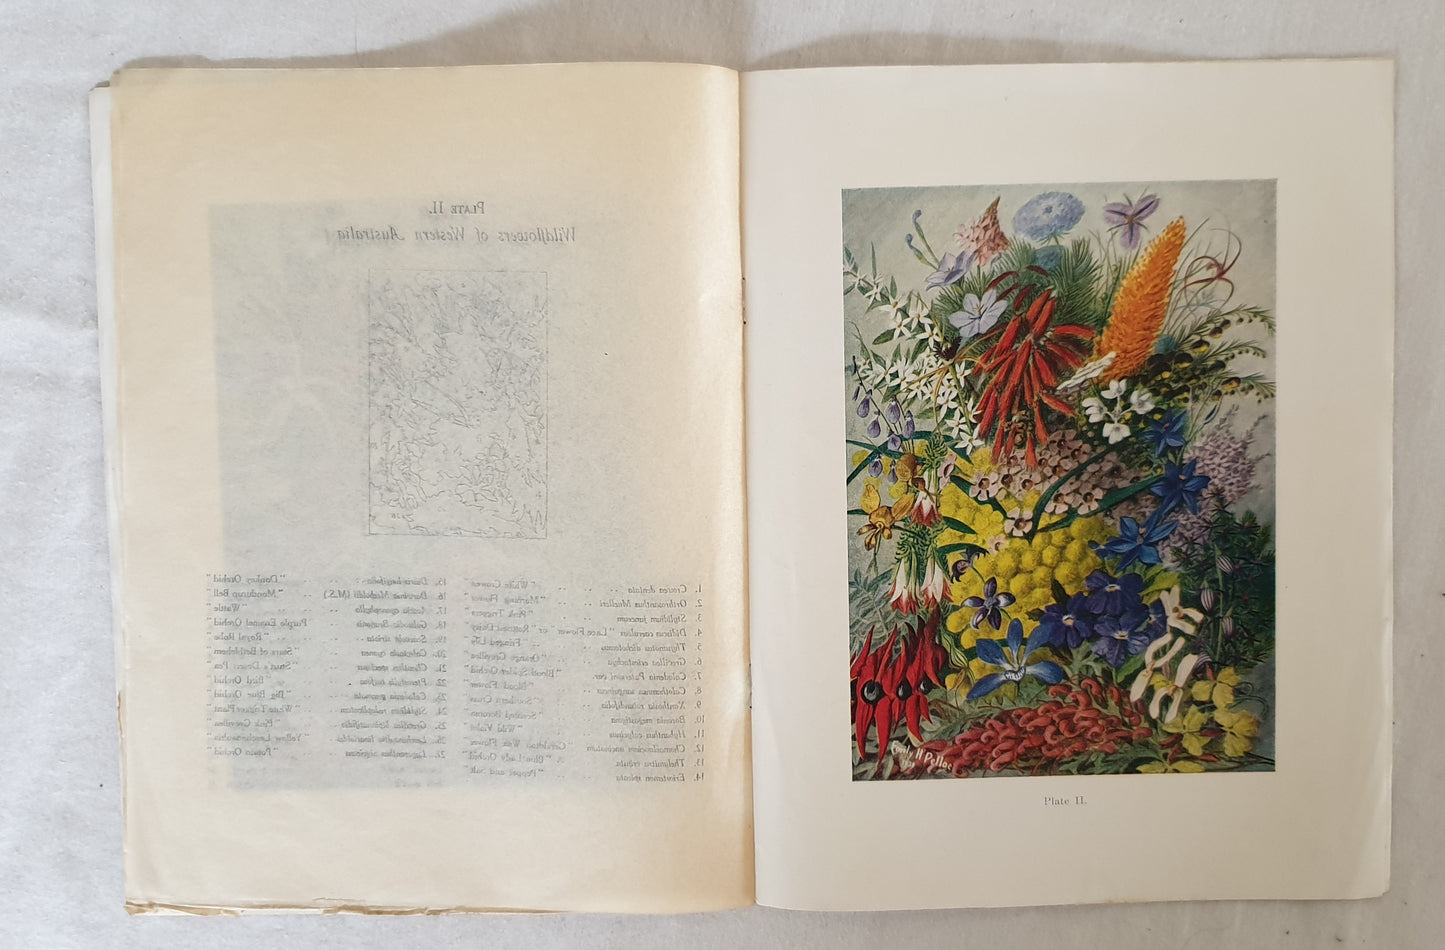 "Localities and Flowering Seasons" by Emily H. Pelloe